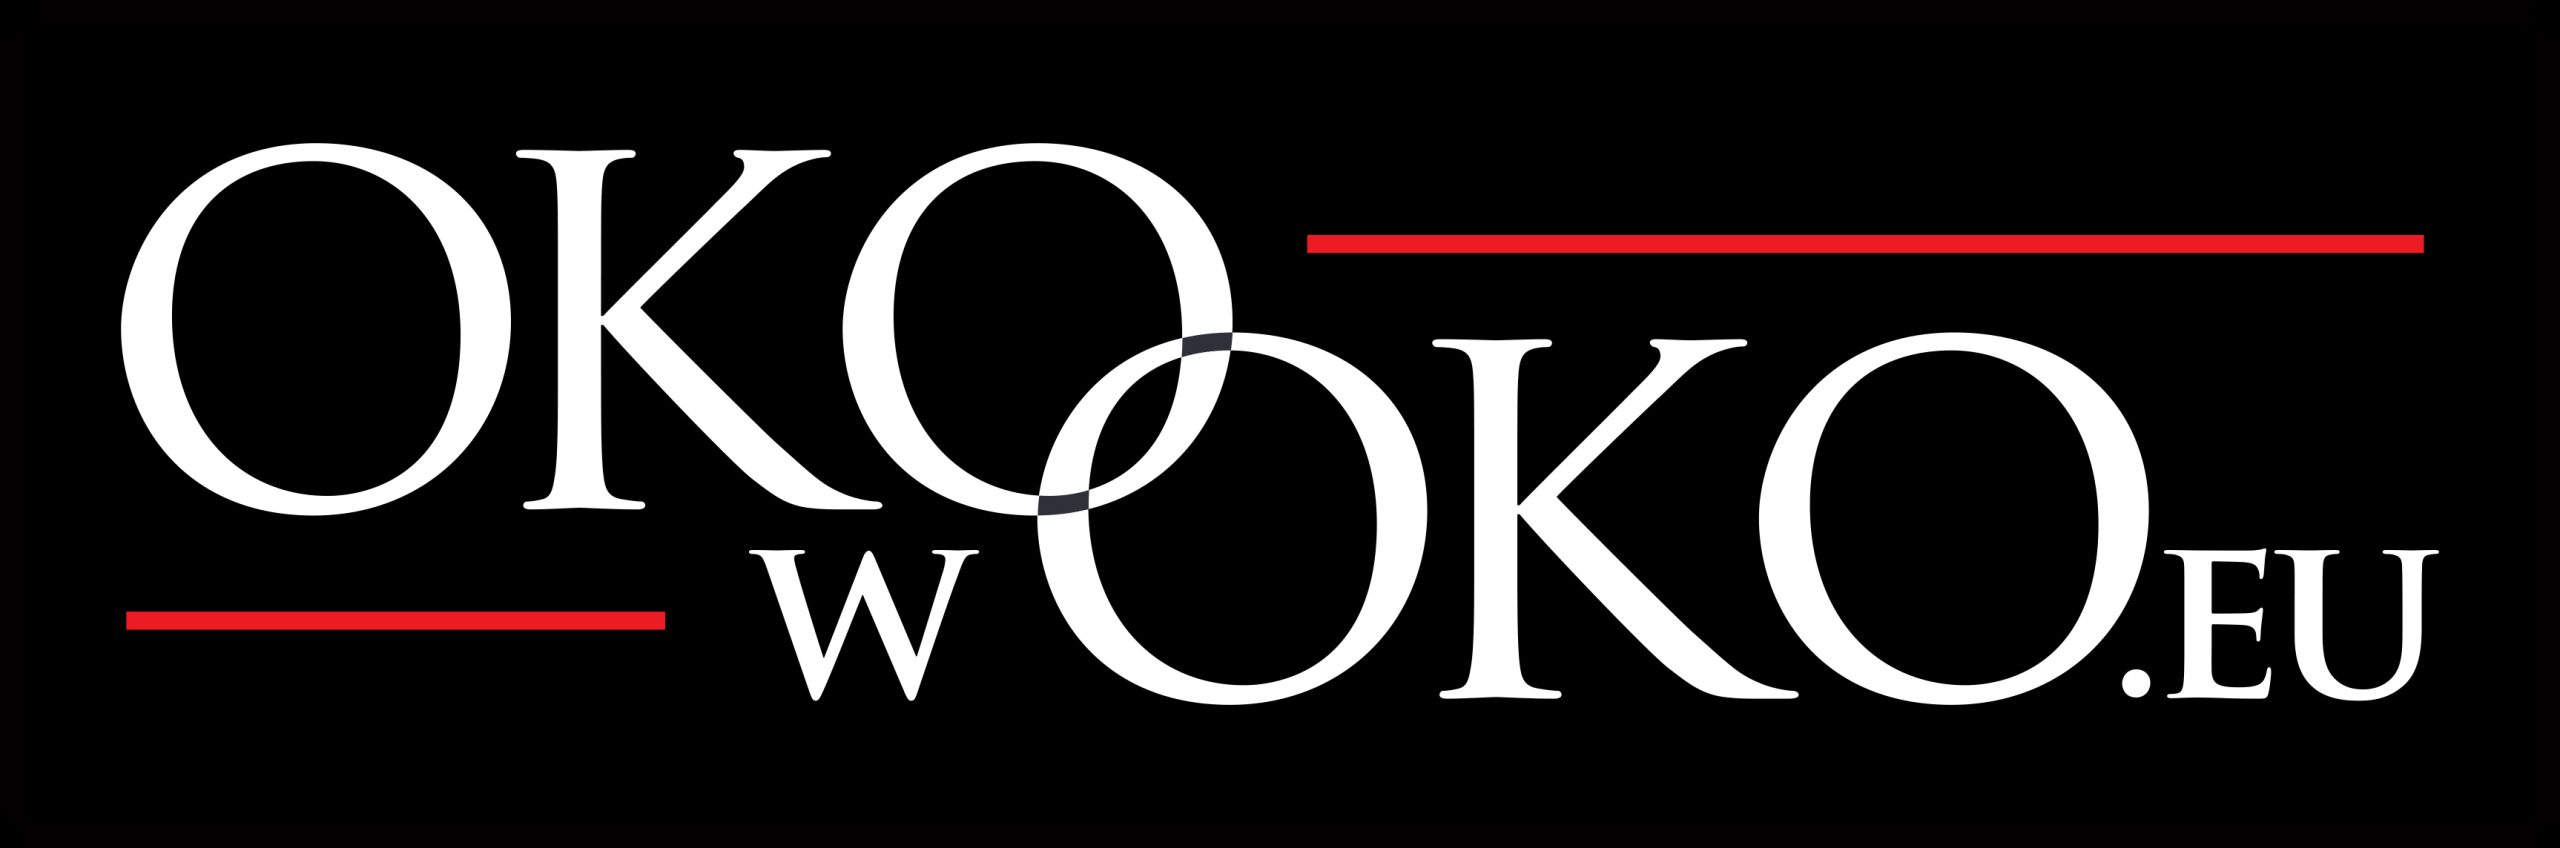 Okowoko.eu – optyka, optometria